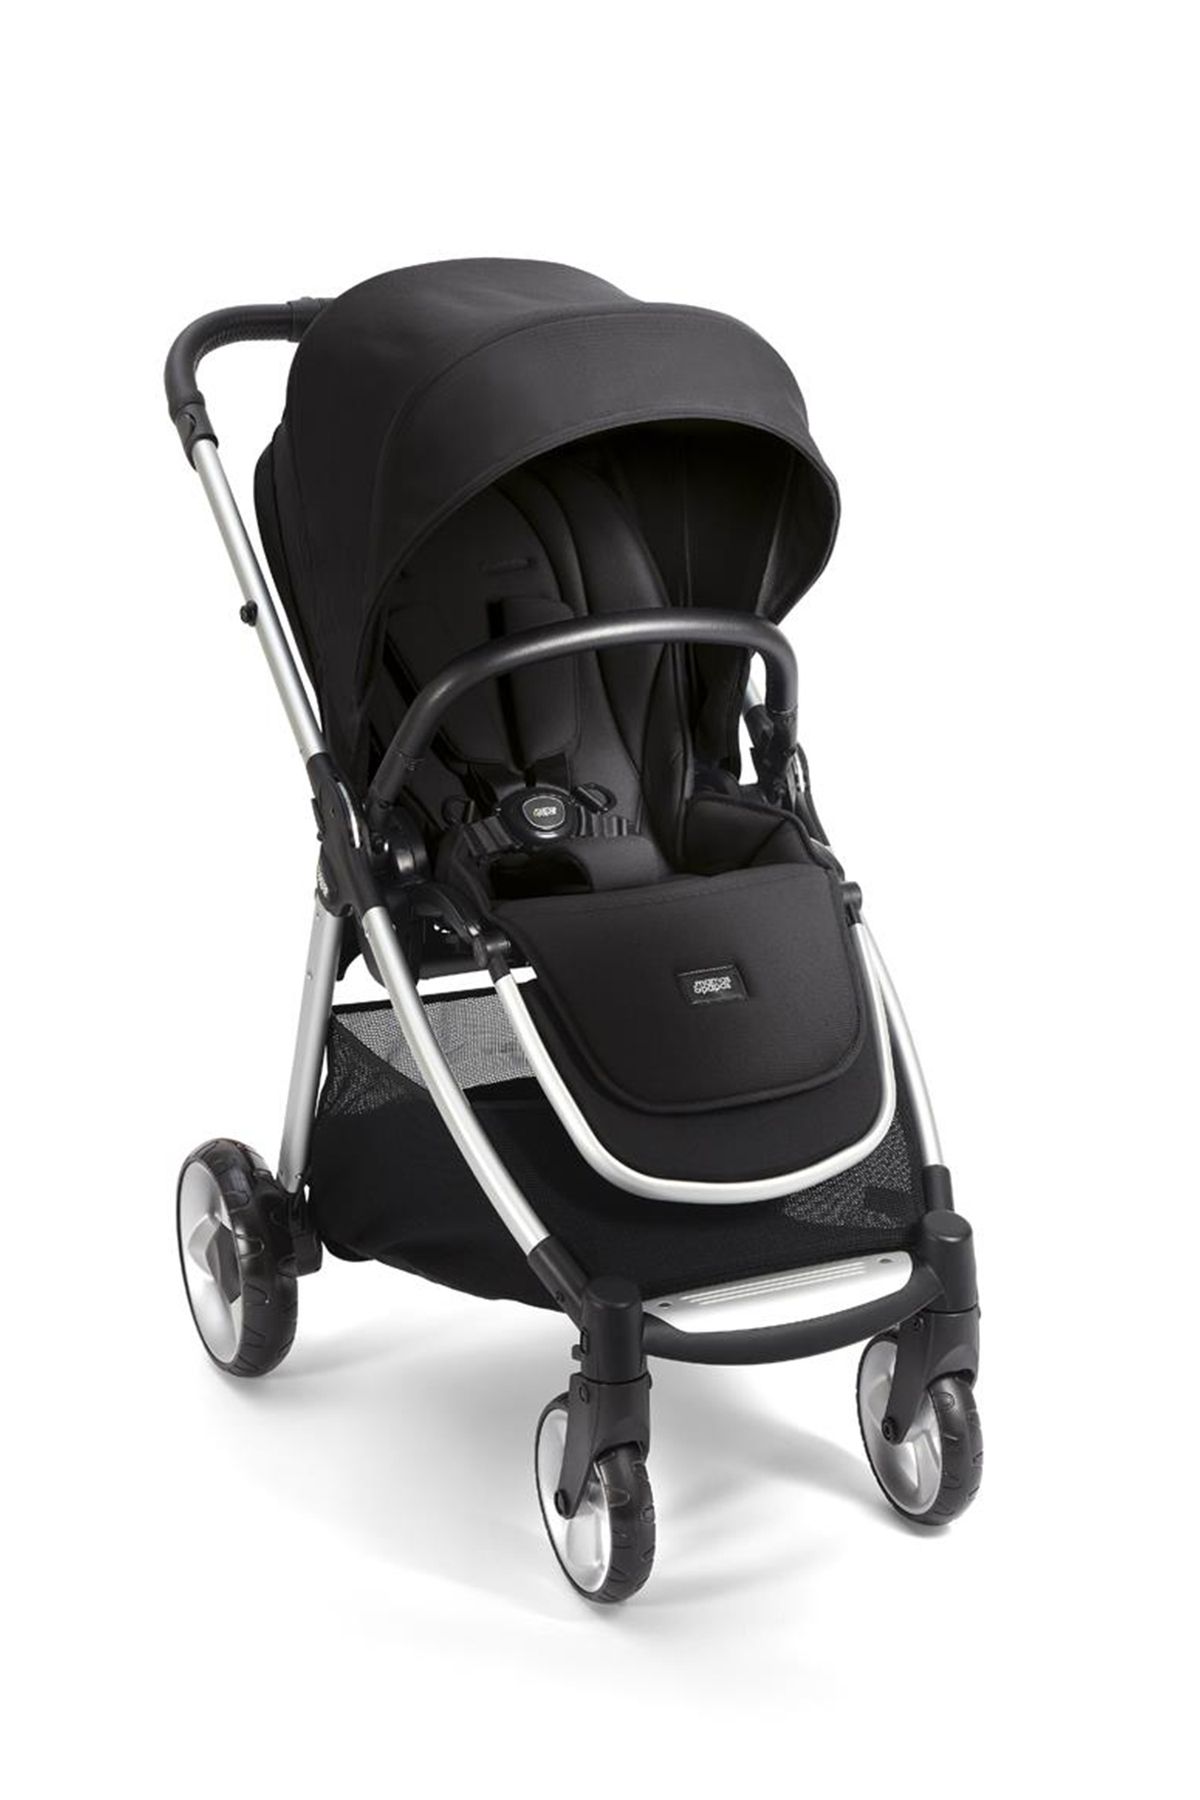 Mamas Papas Flip XT 2 Cosmo Black Çift Yönlü Seyahat Sistem Bebek Arabası